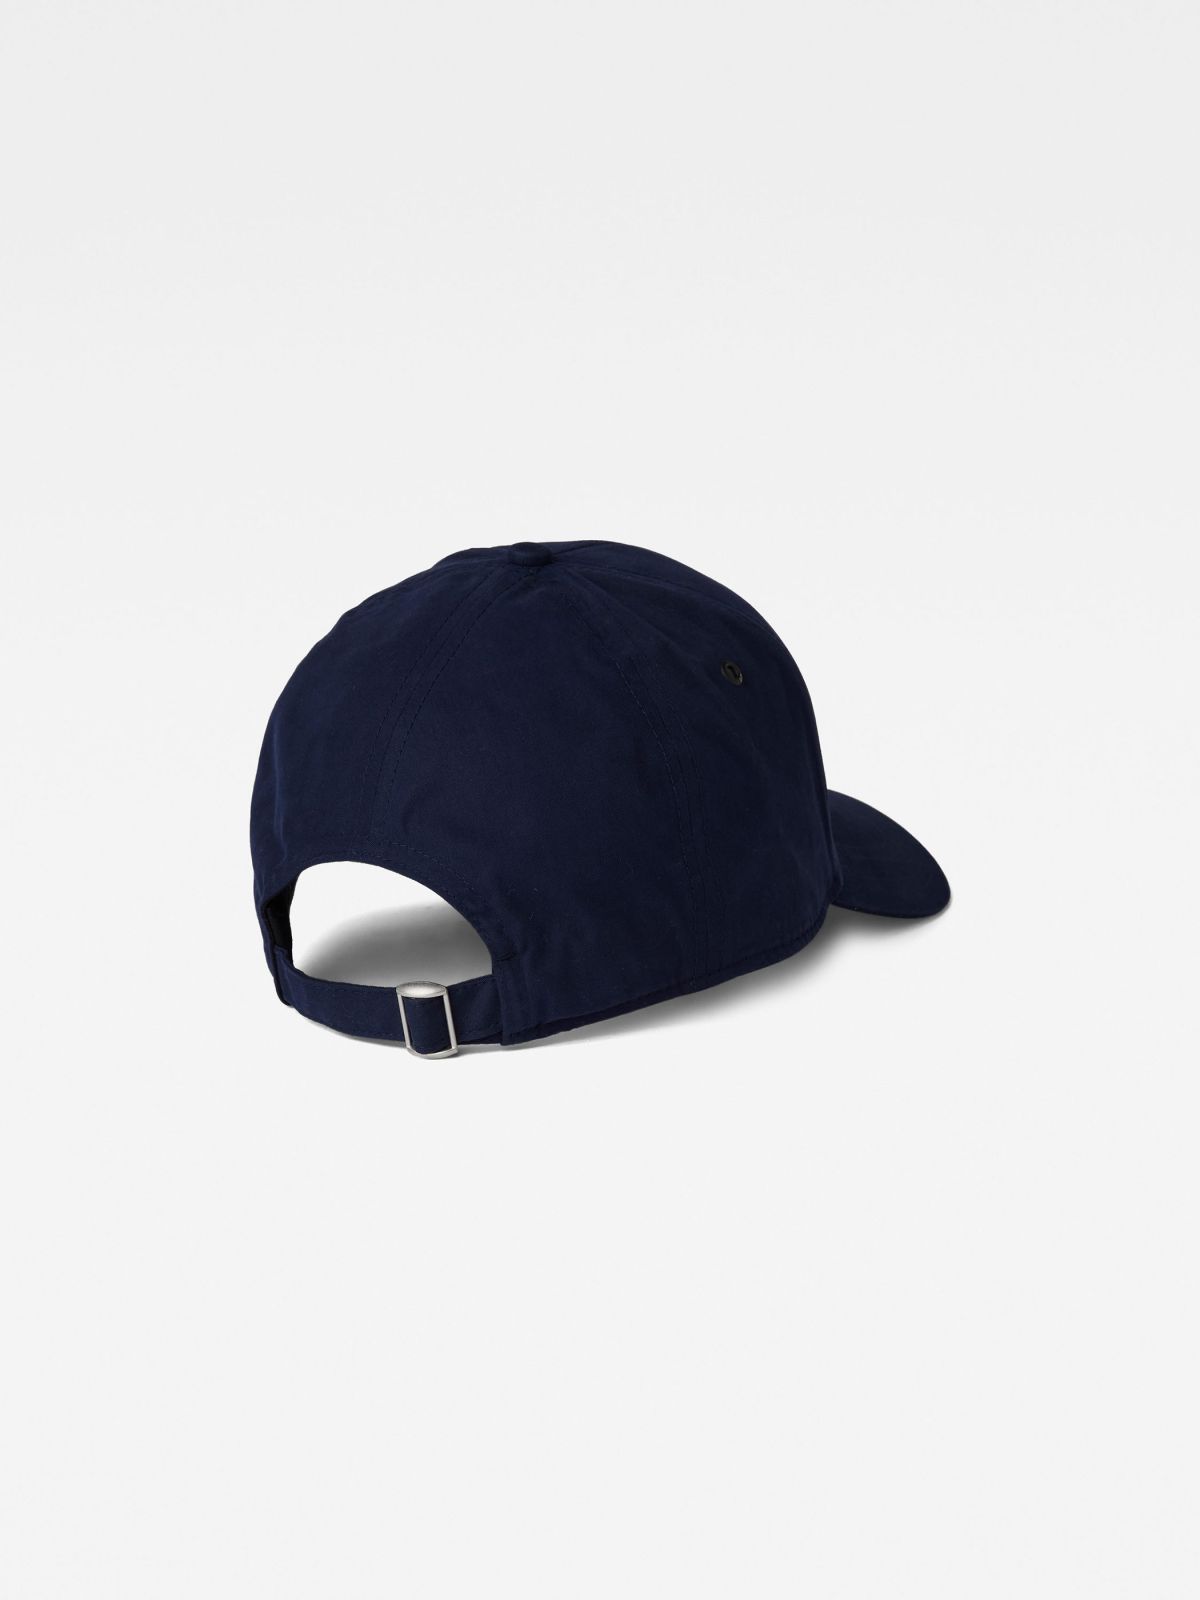  כובע מצחייה עם תווית לוגו / גברים של G-STAR